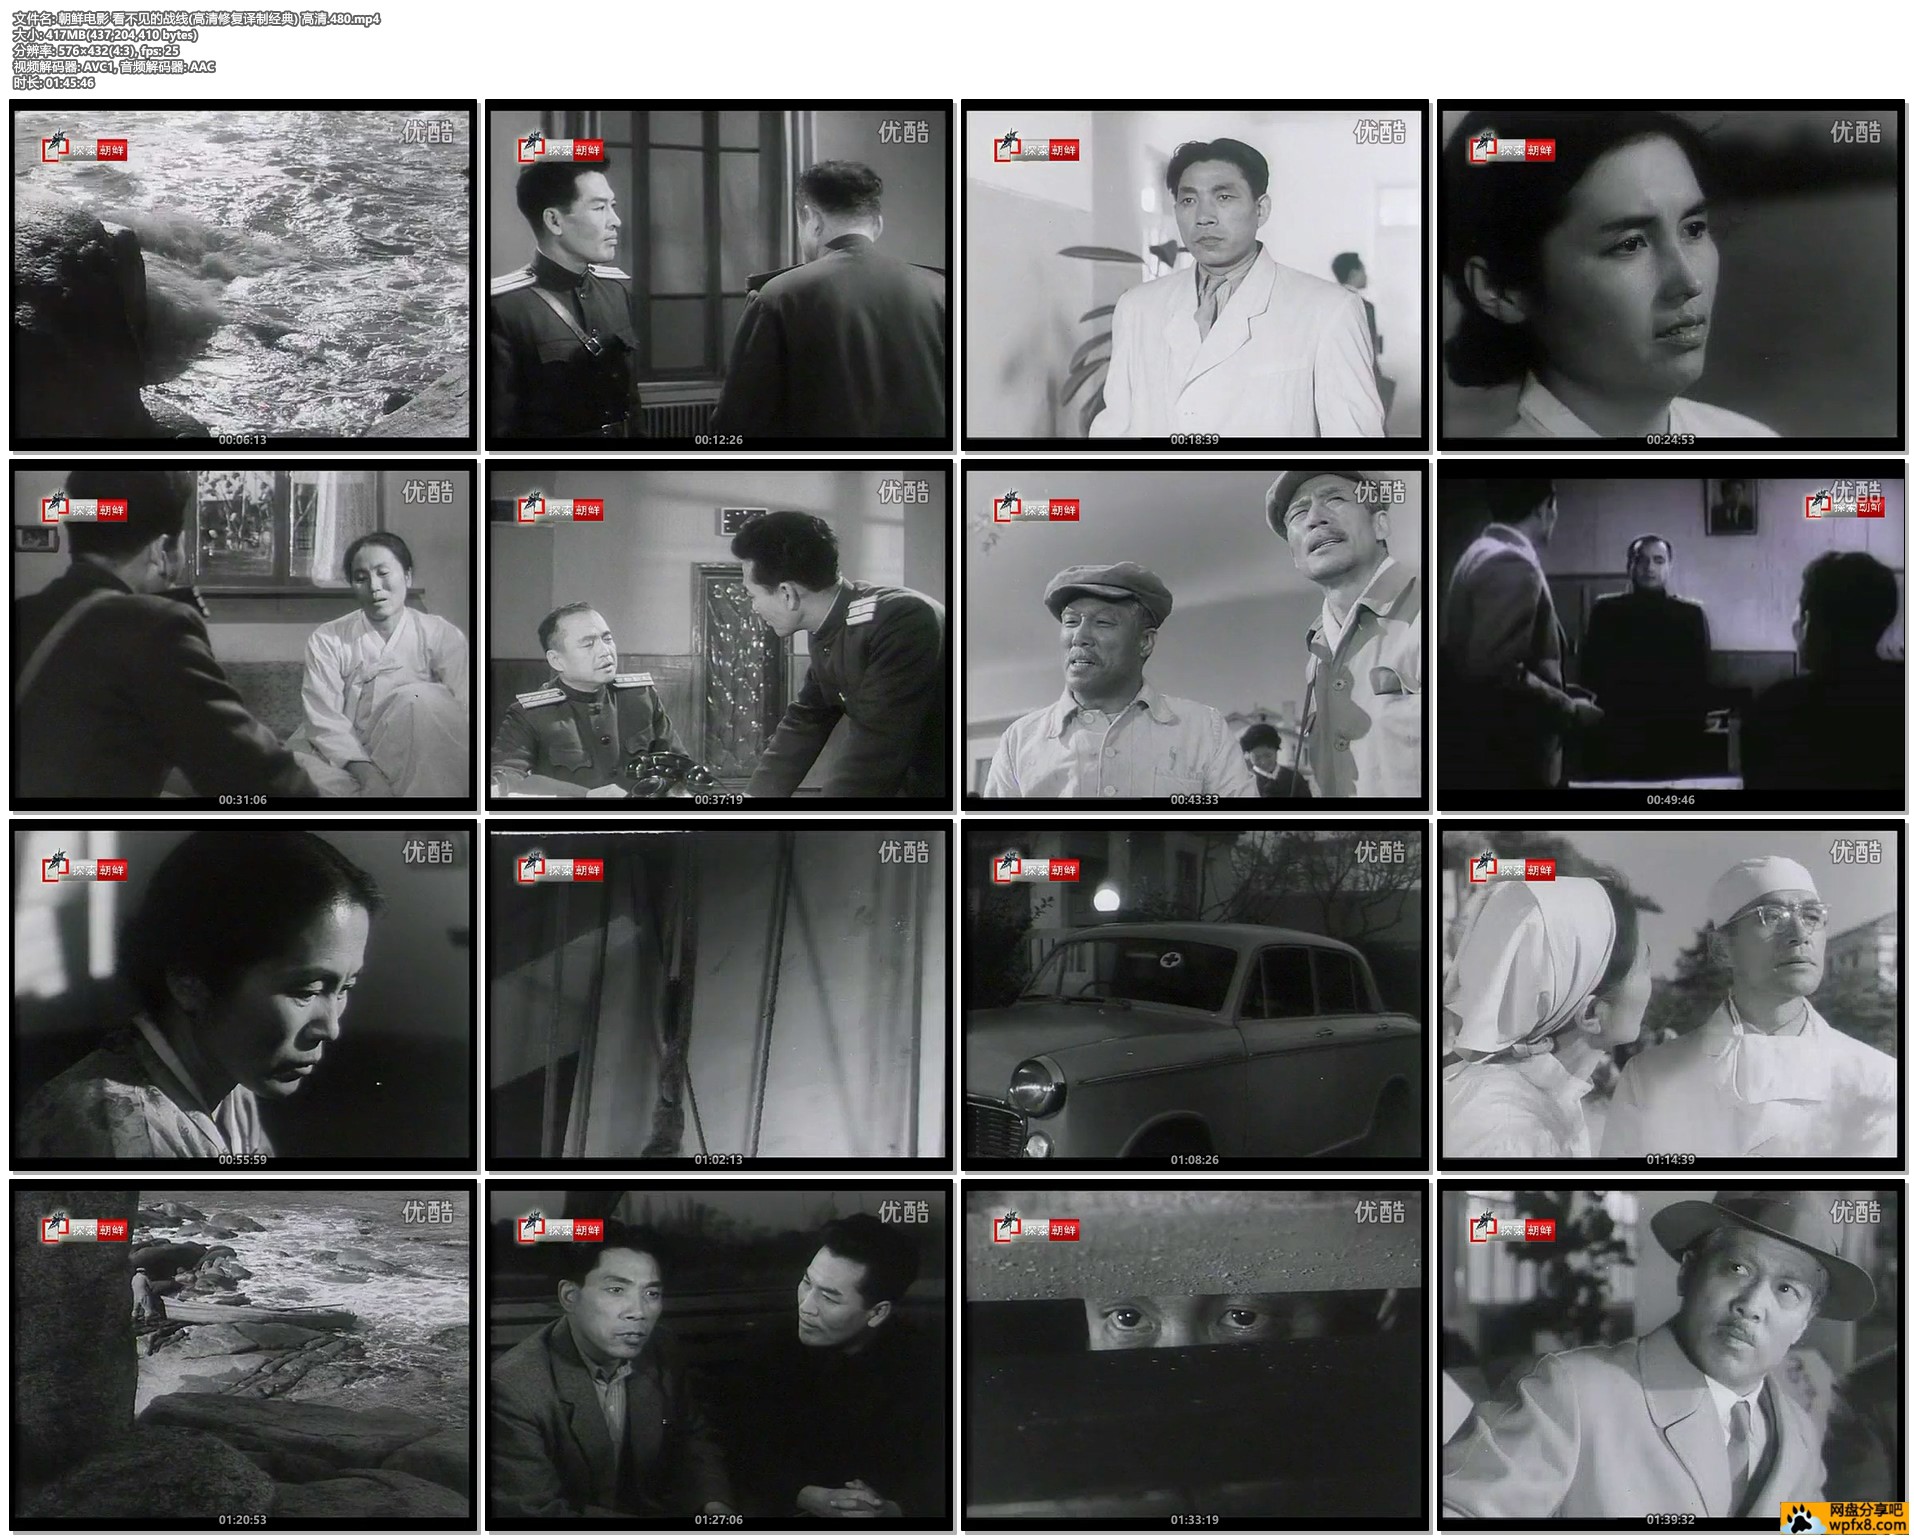 朝鲜电影 看不见的战线(高清修复译制经典) 高清.480.mp4.jpg